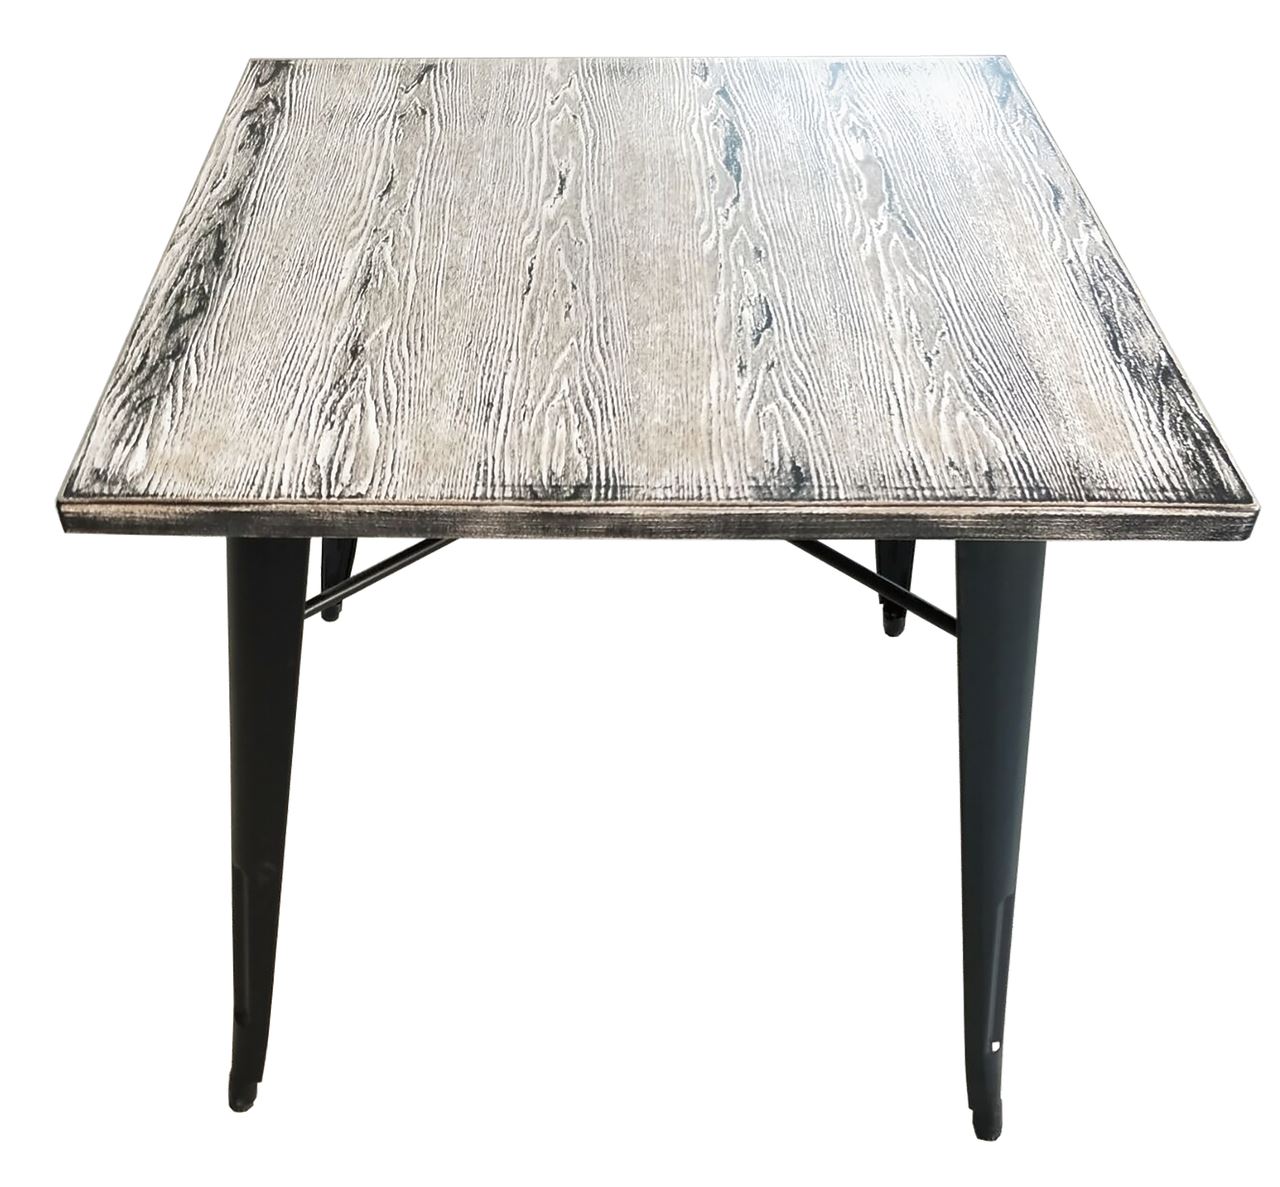 Table Iwood noir 76 x 76 cm Halenbeek